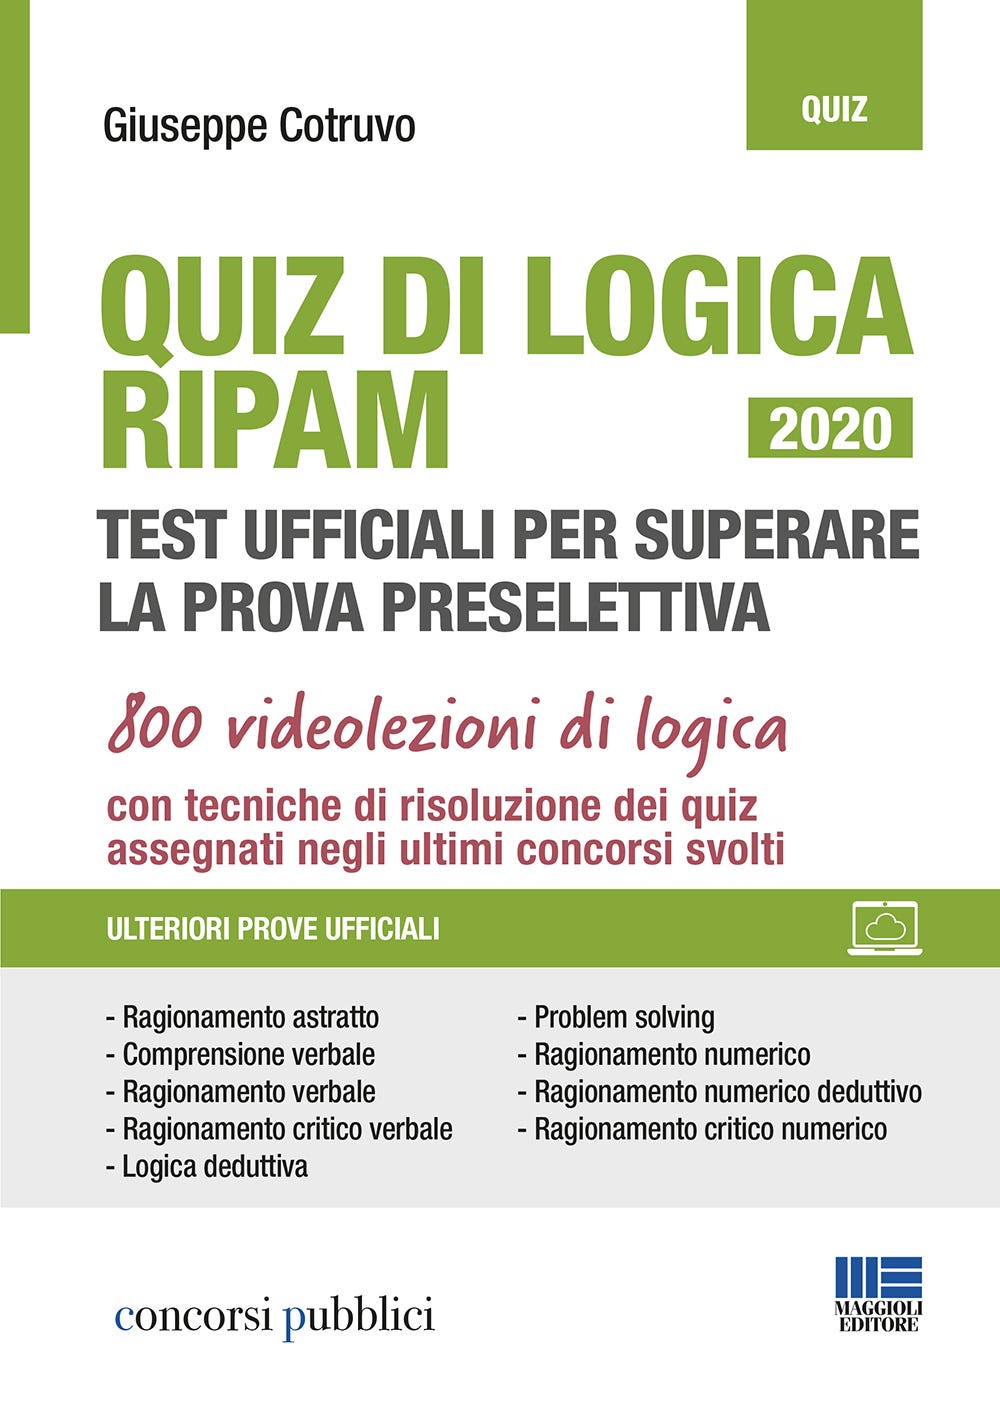 Quiz di Logica RIPAM - Test ufficiali per superare la prova preselettiva